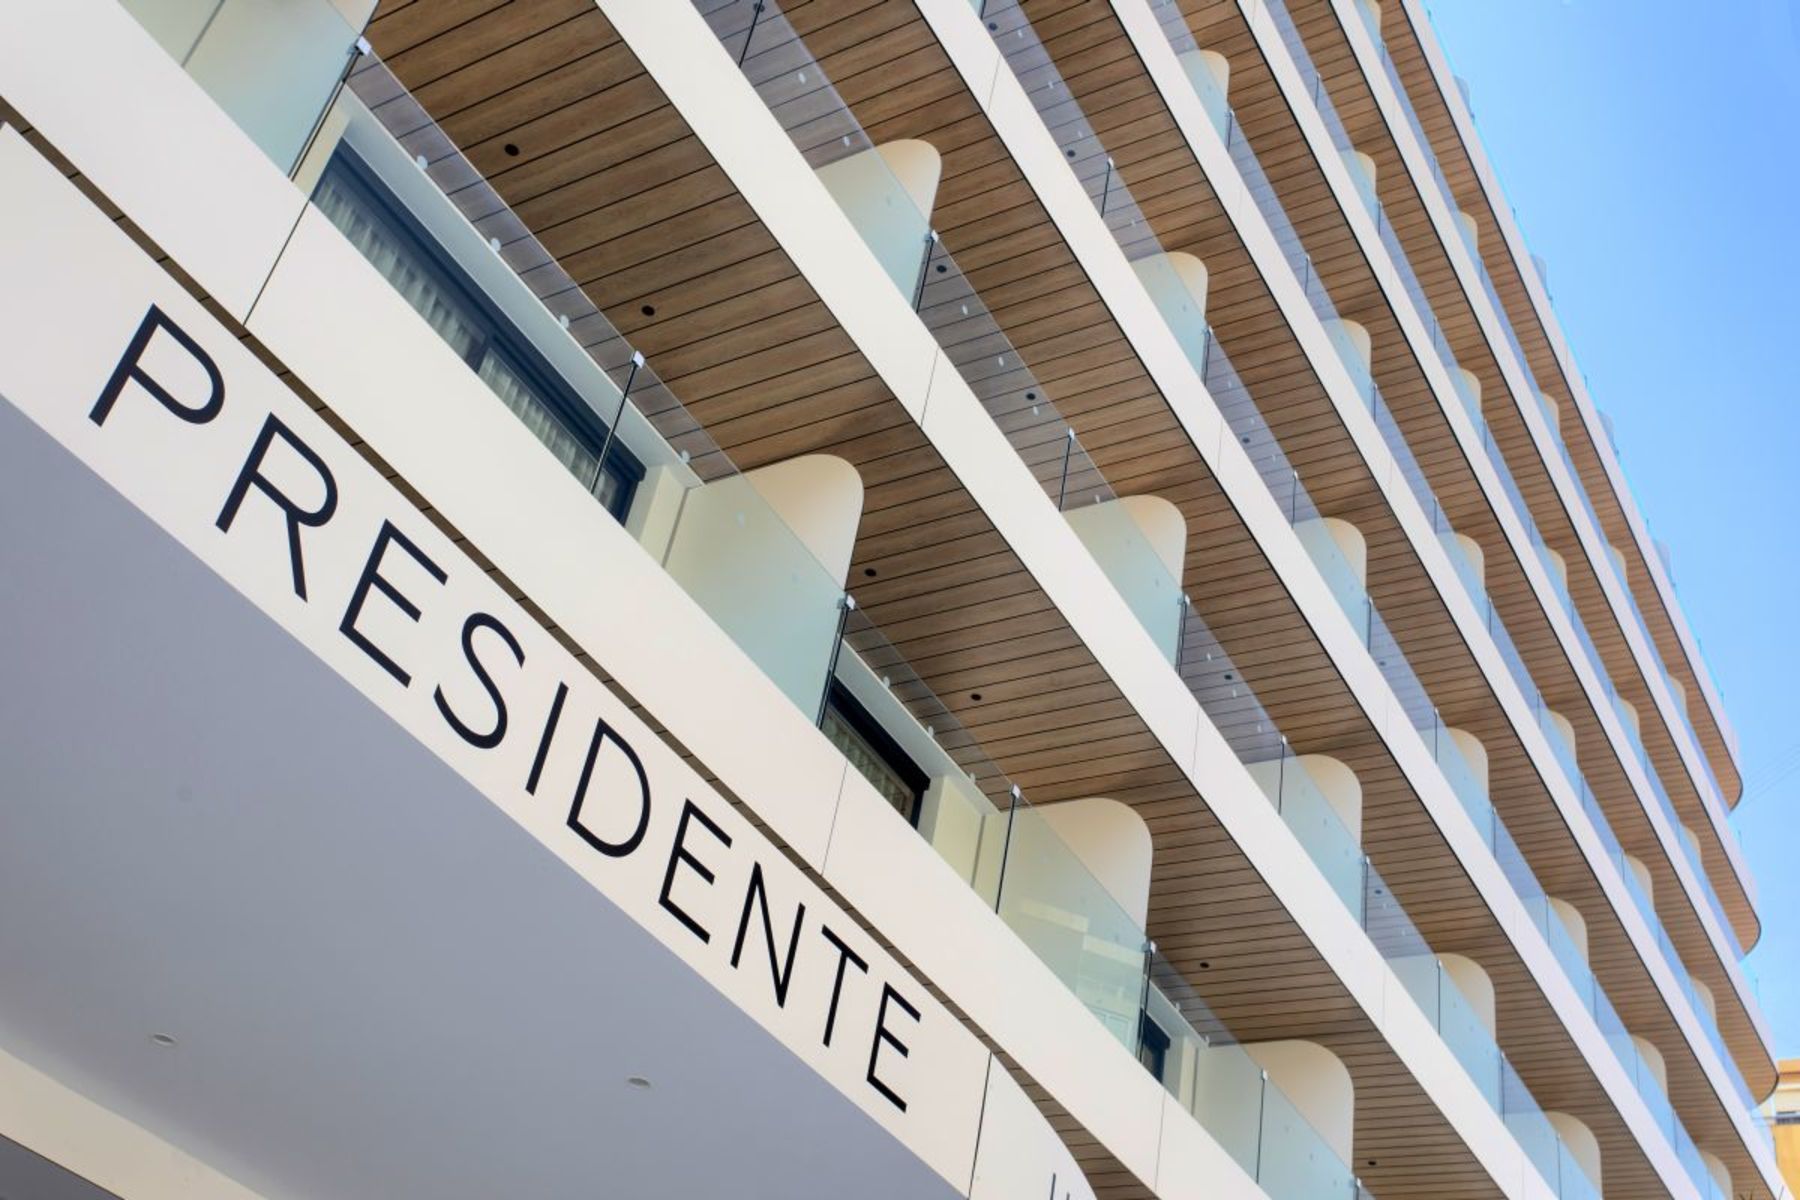 Presidente Hotel, Benidorm, Costa Blanca, Spanje